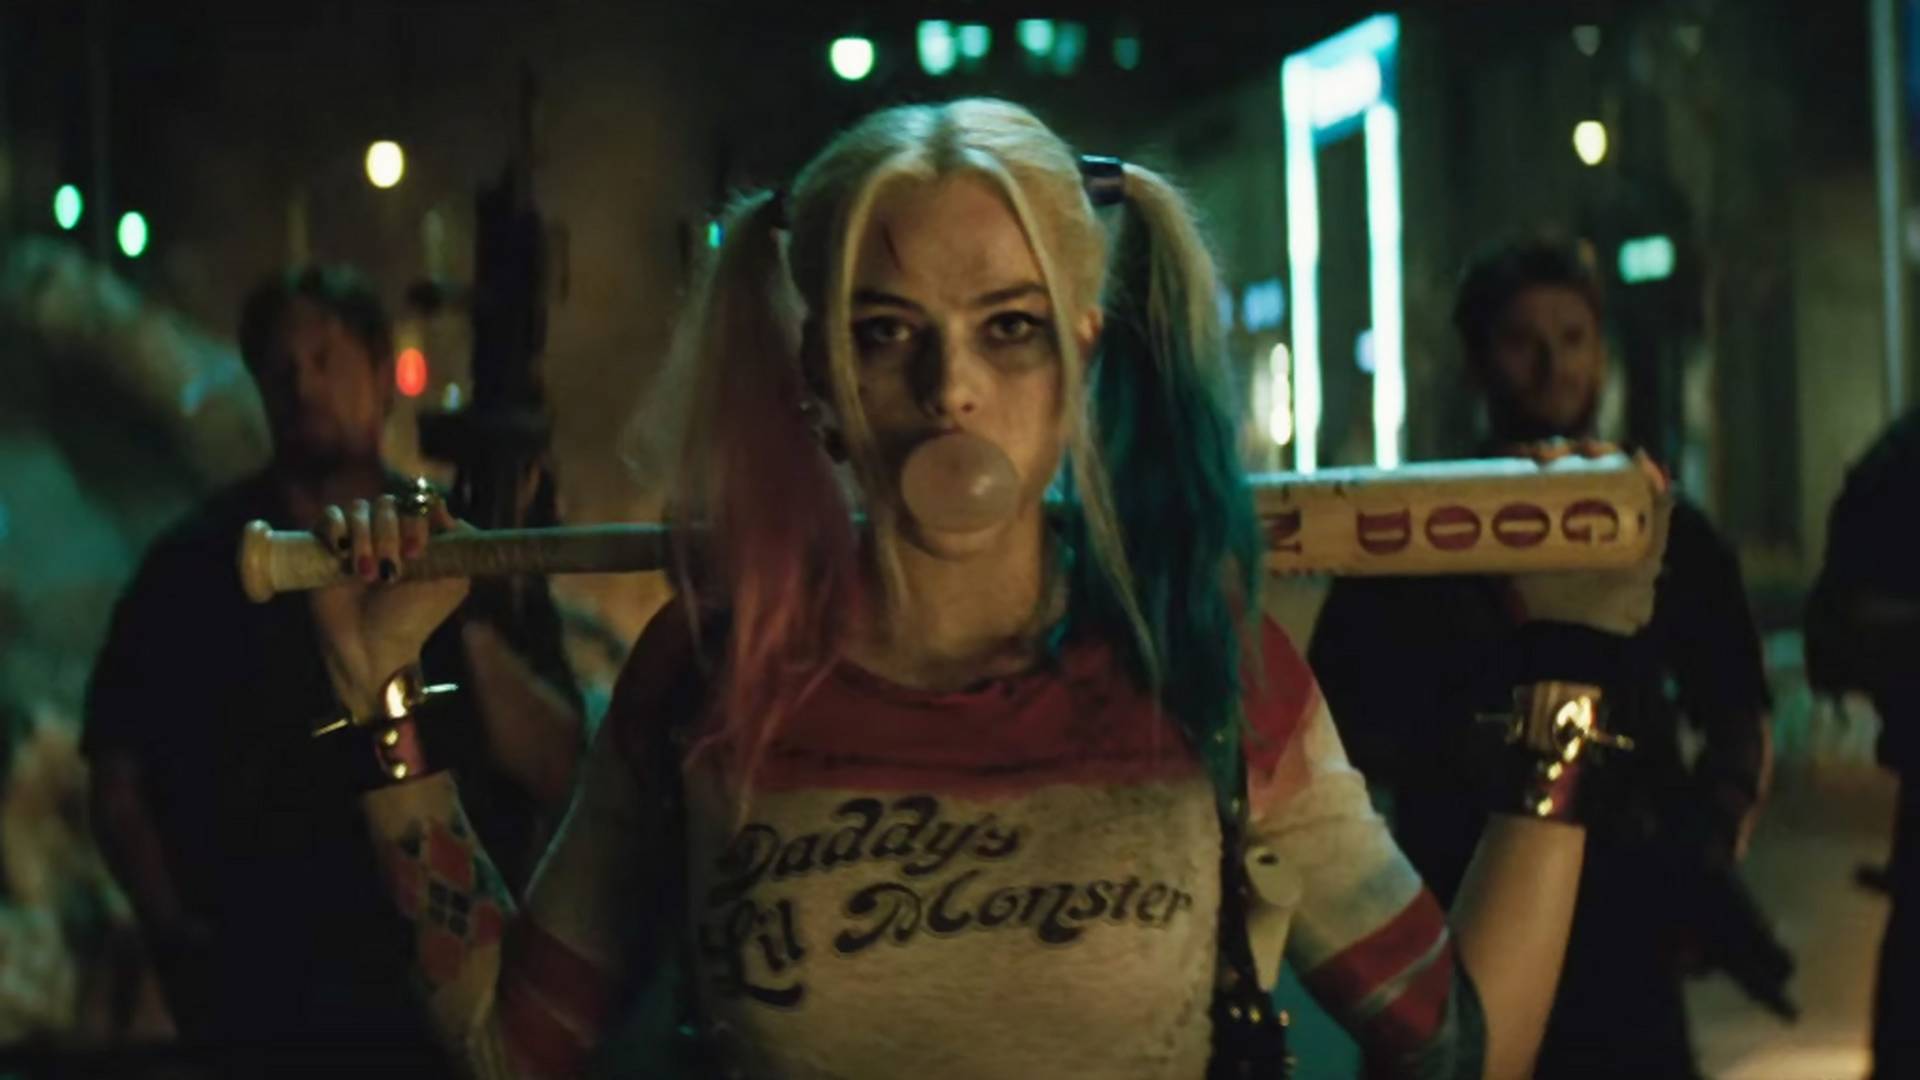 Będzie film o Harley Quinn z "Legionu samobójców". Zobacz, co wiemy o "Gotham City Sirens"